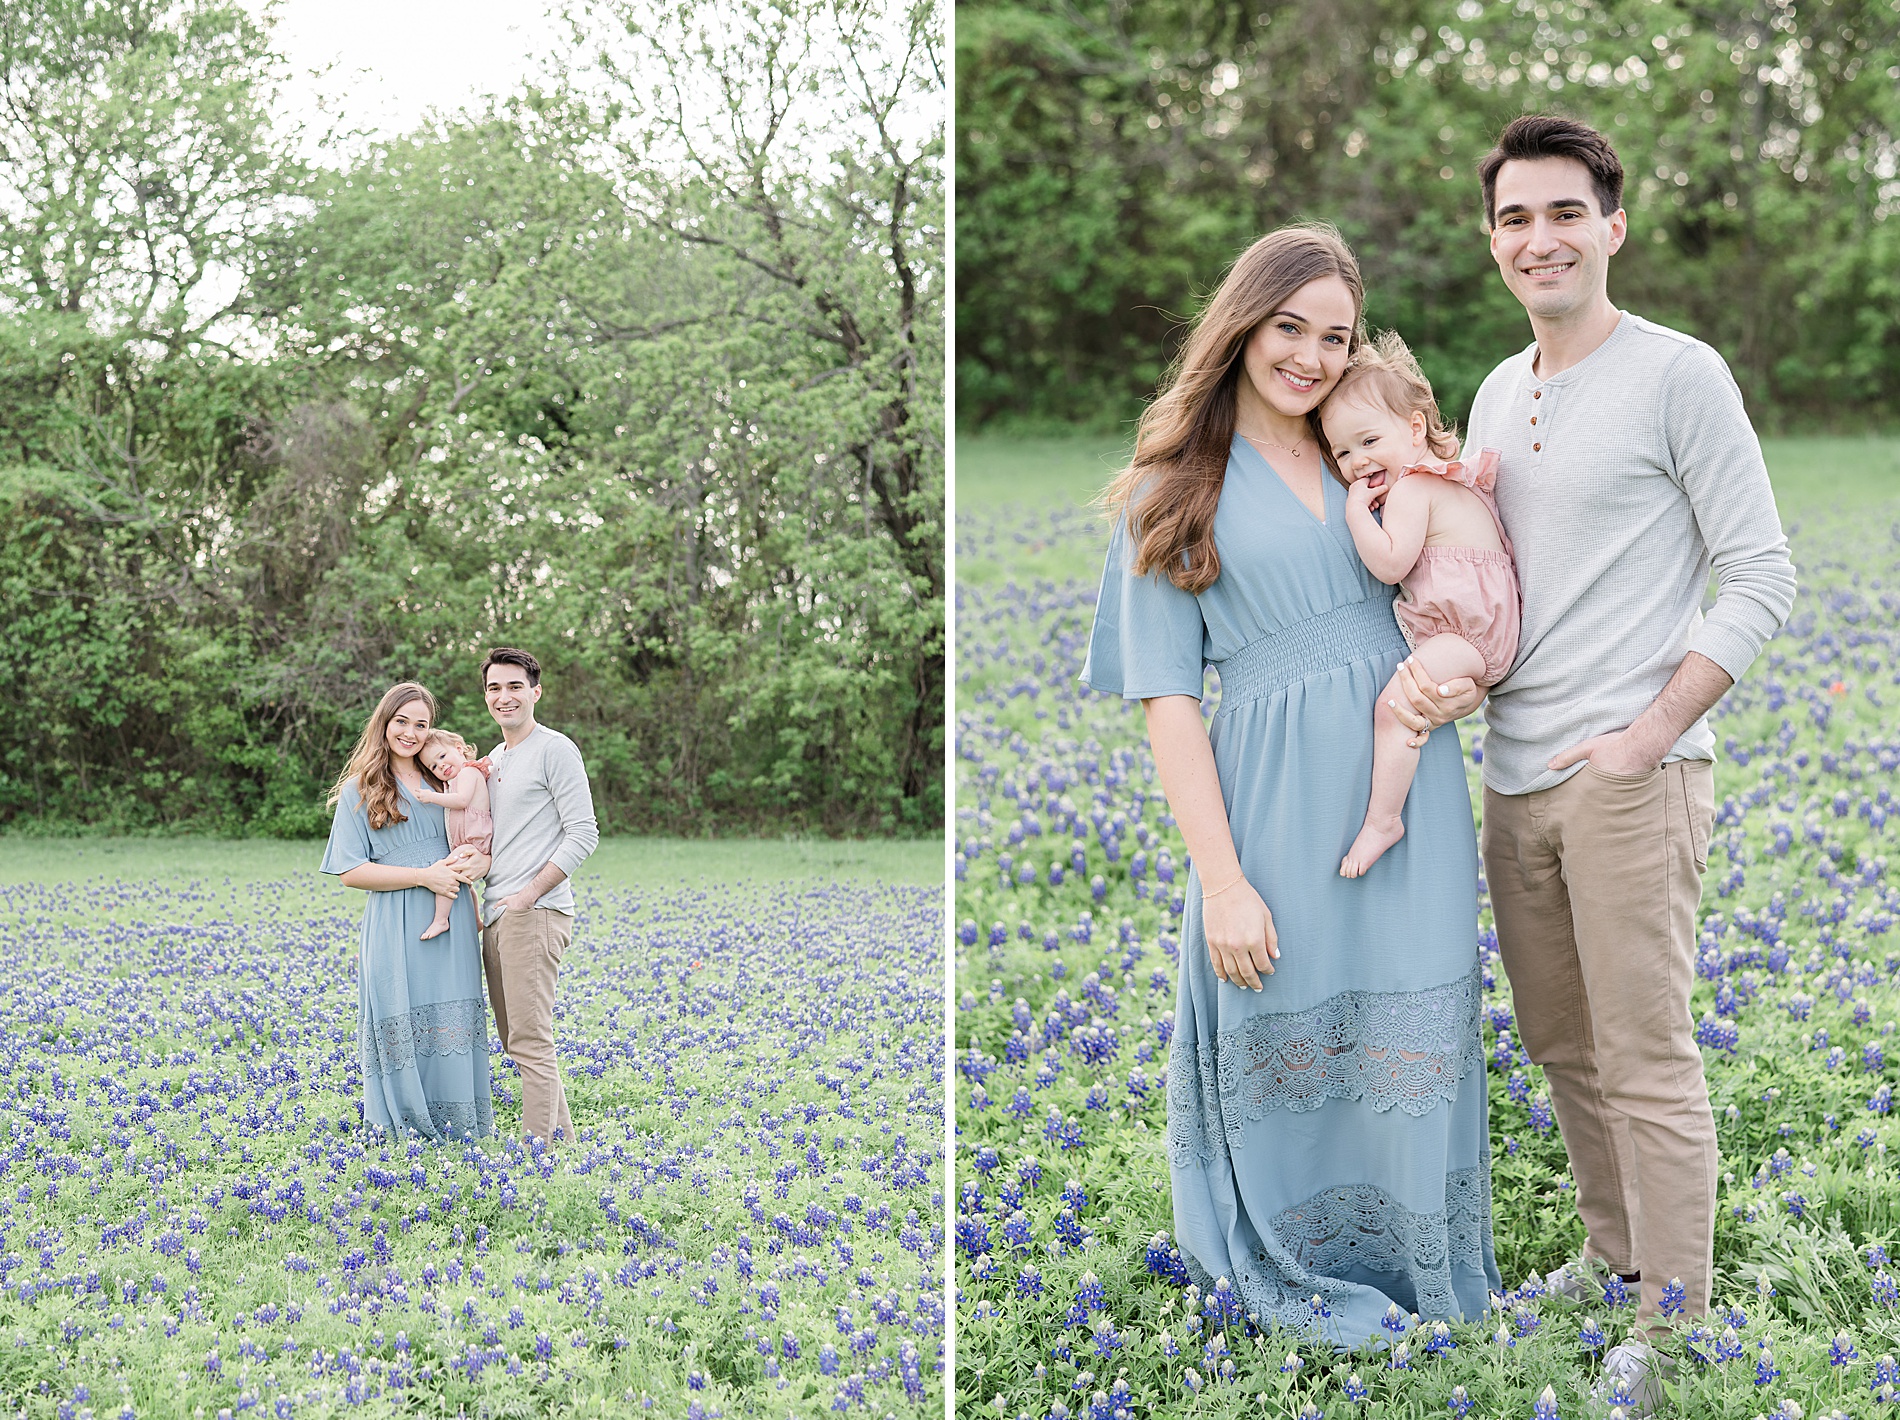 Dallas Texas Bluebonnet Family Photos taken by Lindsey Dutton Photography, a Dallas family photographer